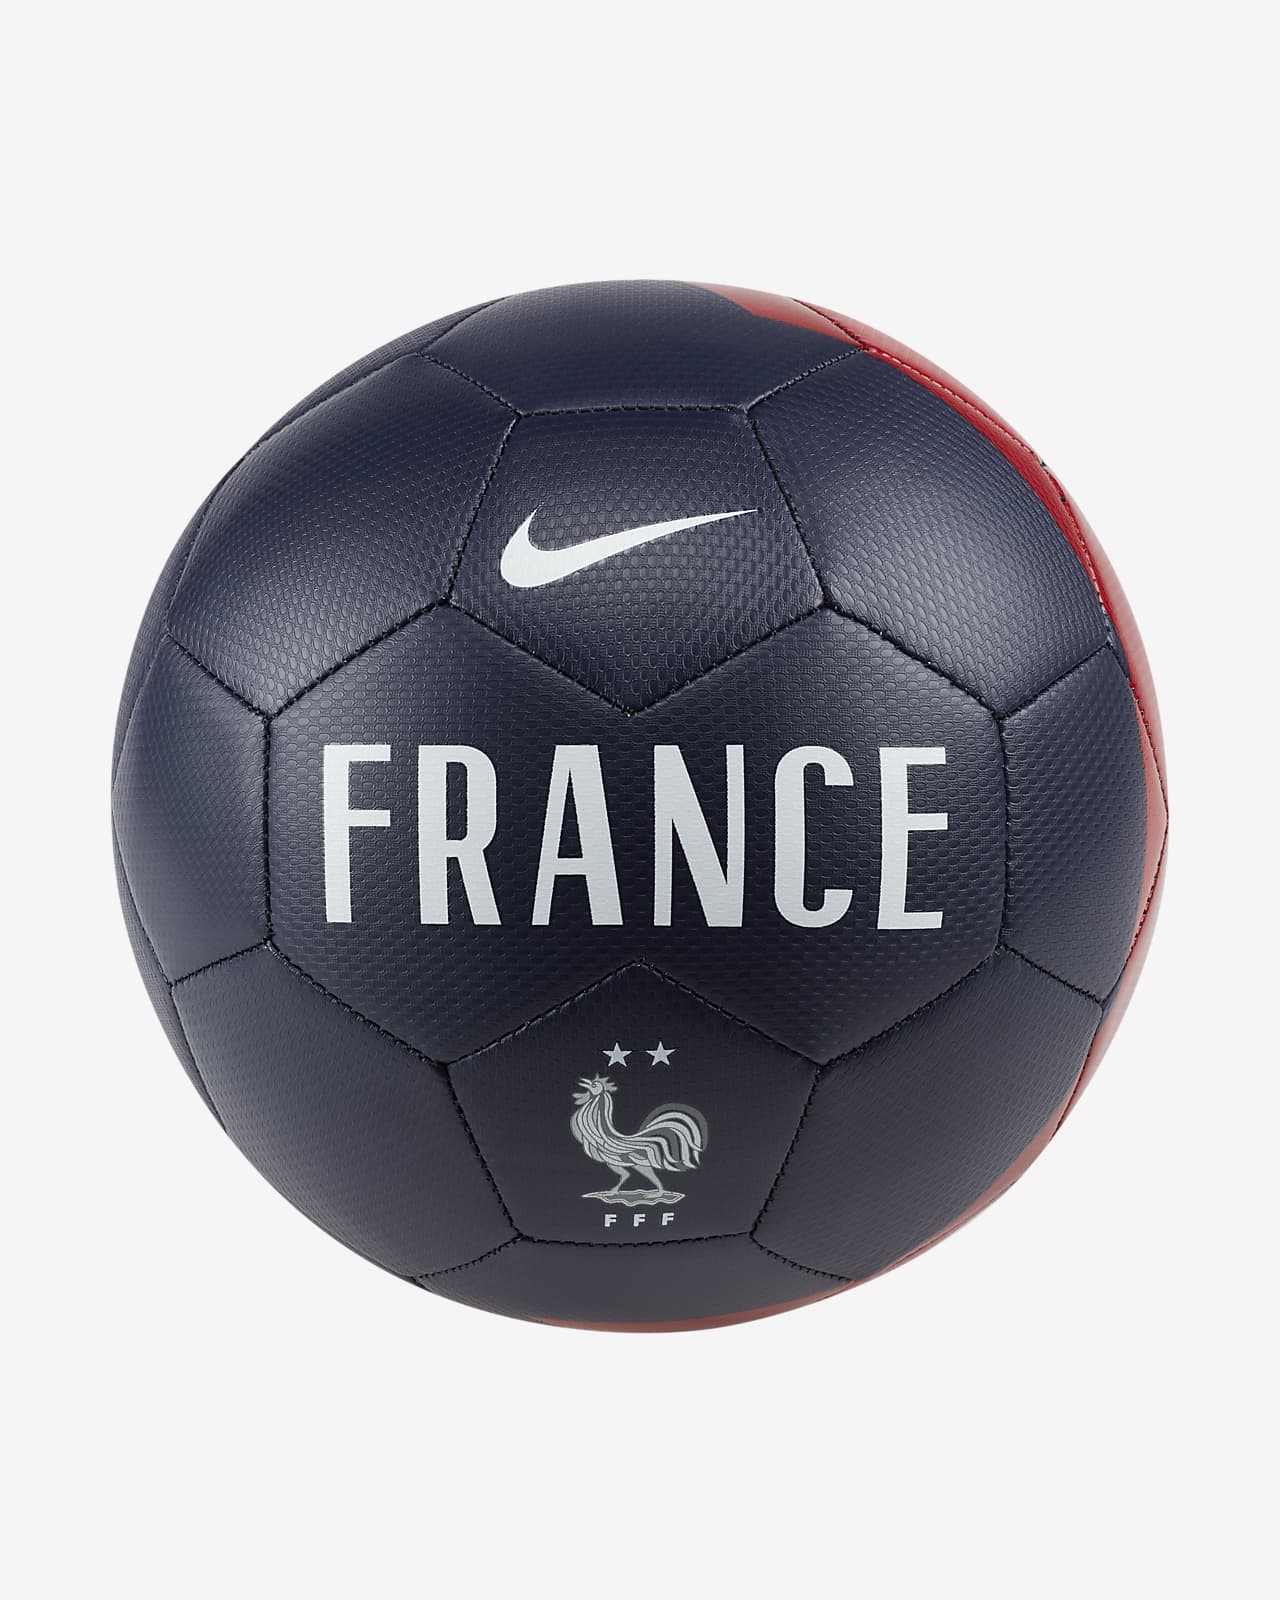 Nike公式 Fff プレスティージ サッカーボール オンラインストア 通販サイト